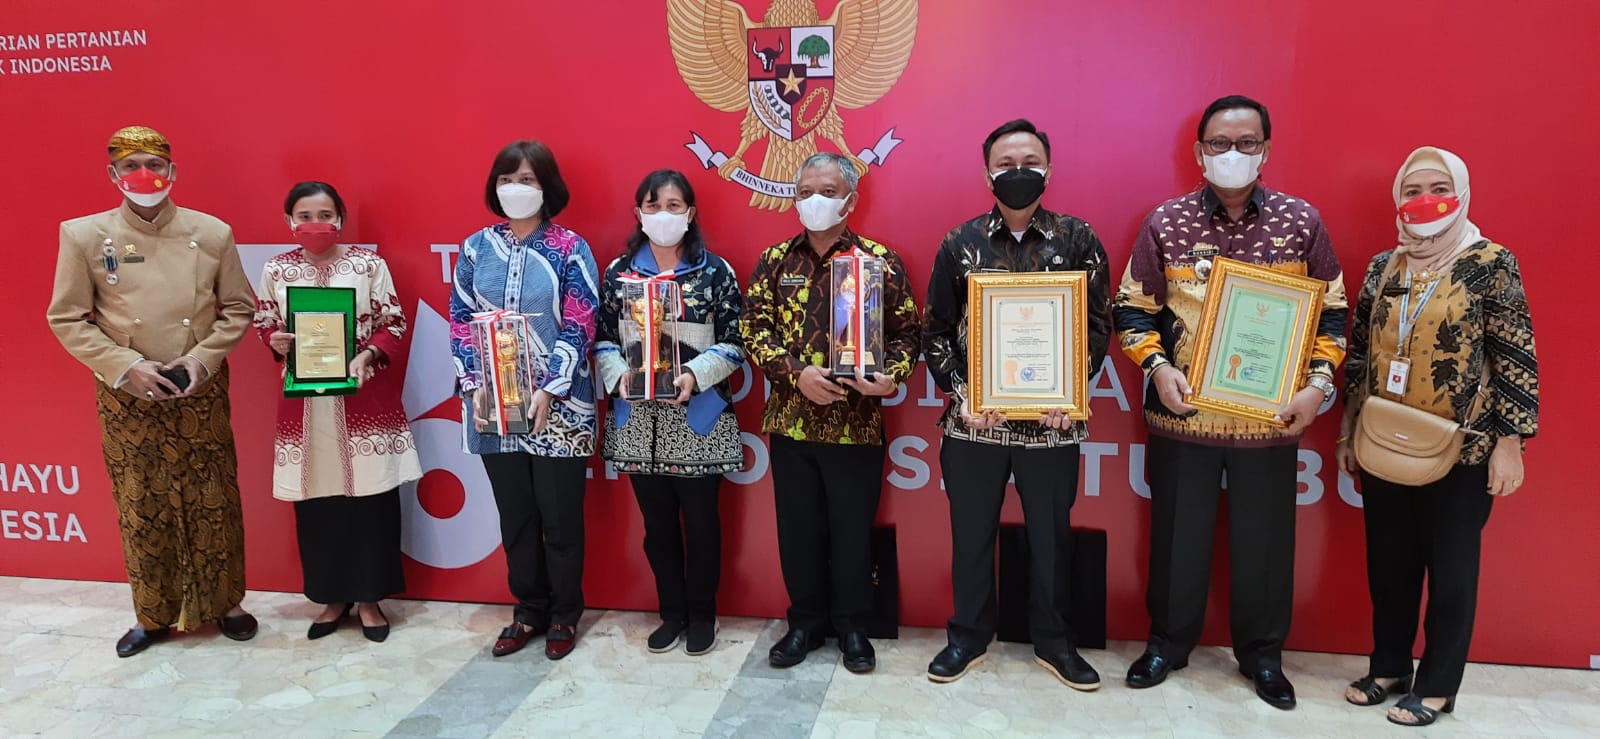 Pemerintah Provinsi Lampung Raih Penghargaan Abdi Bakti Tani Tahun 2021